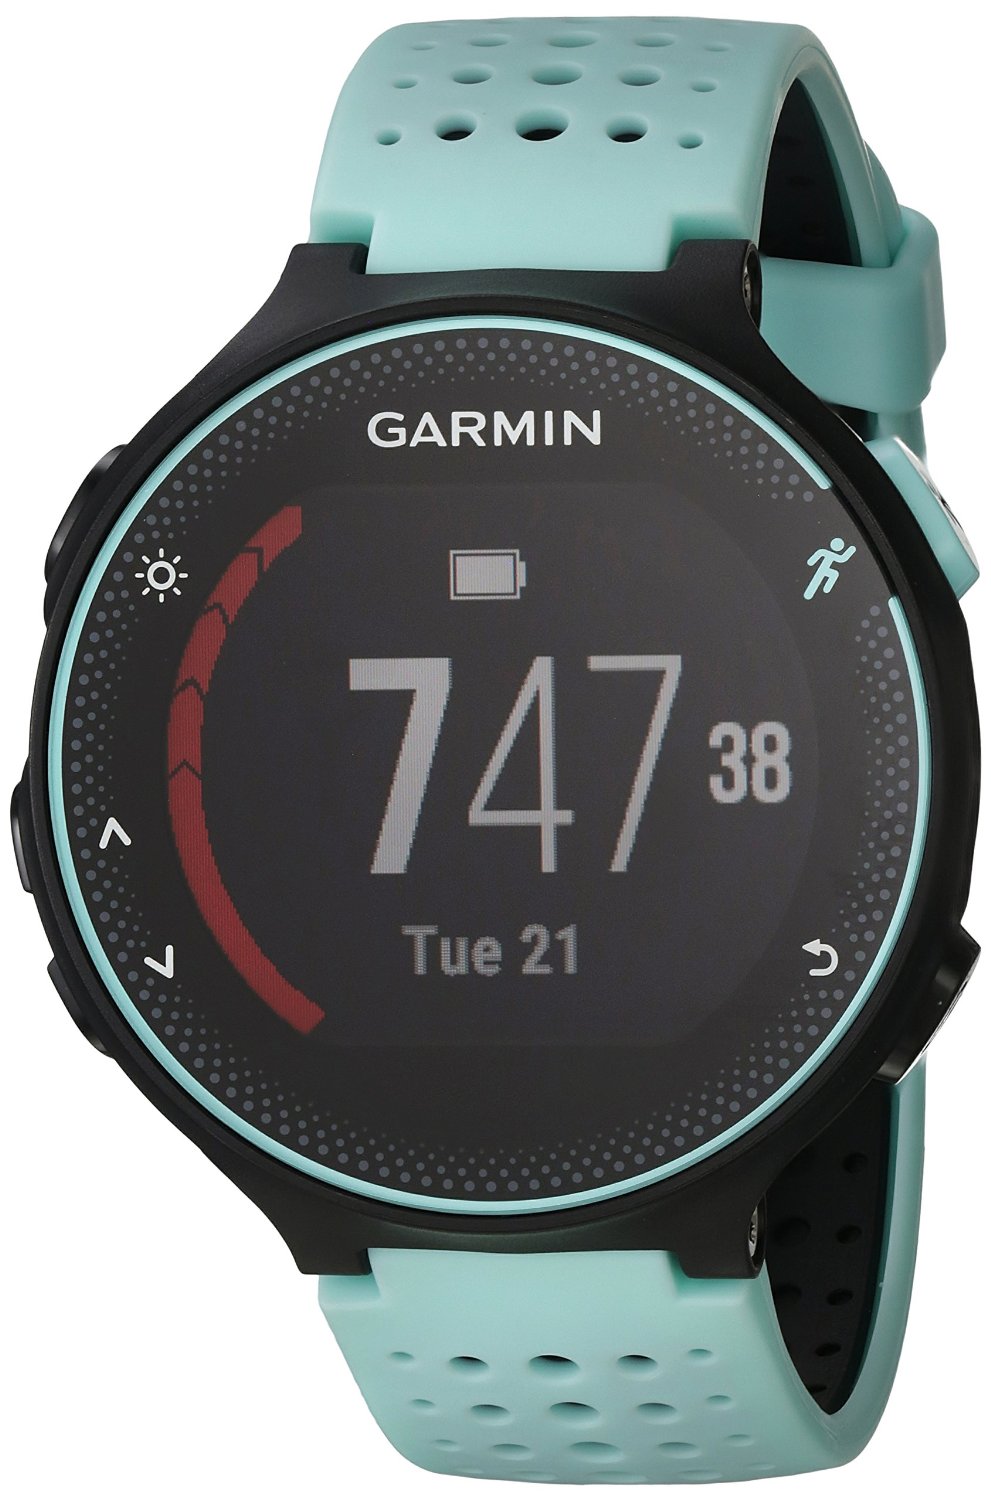 Garmin-Forerunner-230-GPS-activity-tracker-for-runners